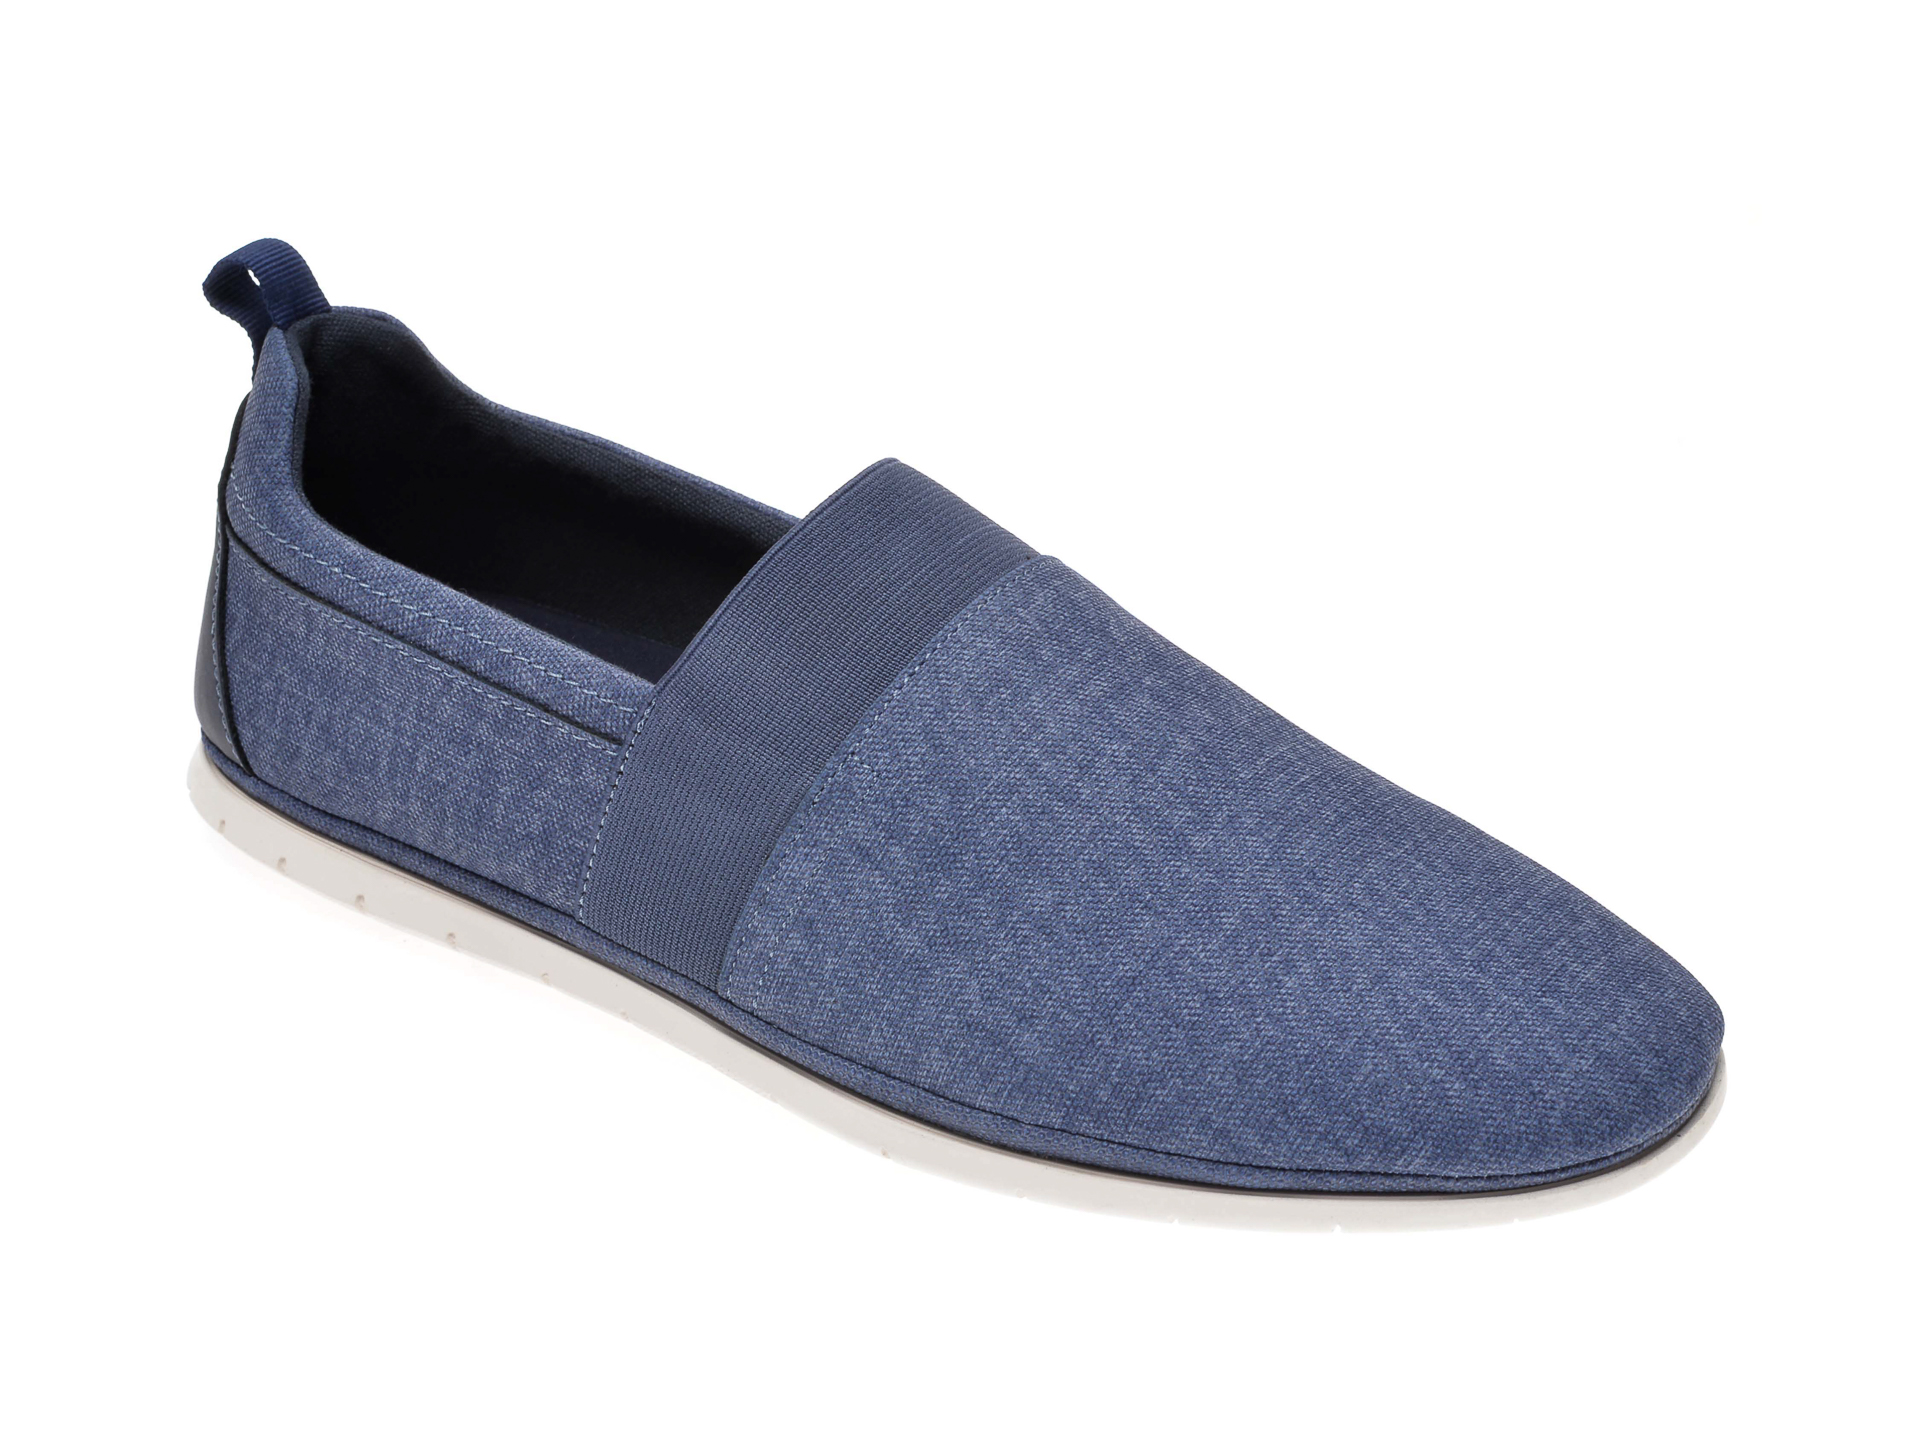 Pantofi ALDO bleumarin, Schoville410, din material textil Aldo imagine 2022 reducere